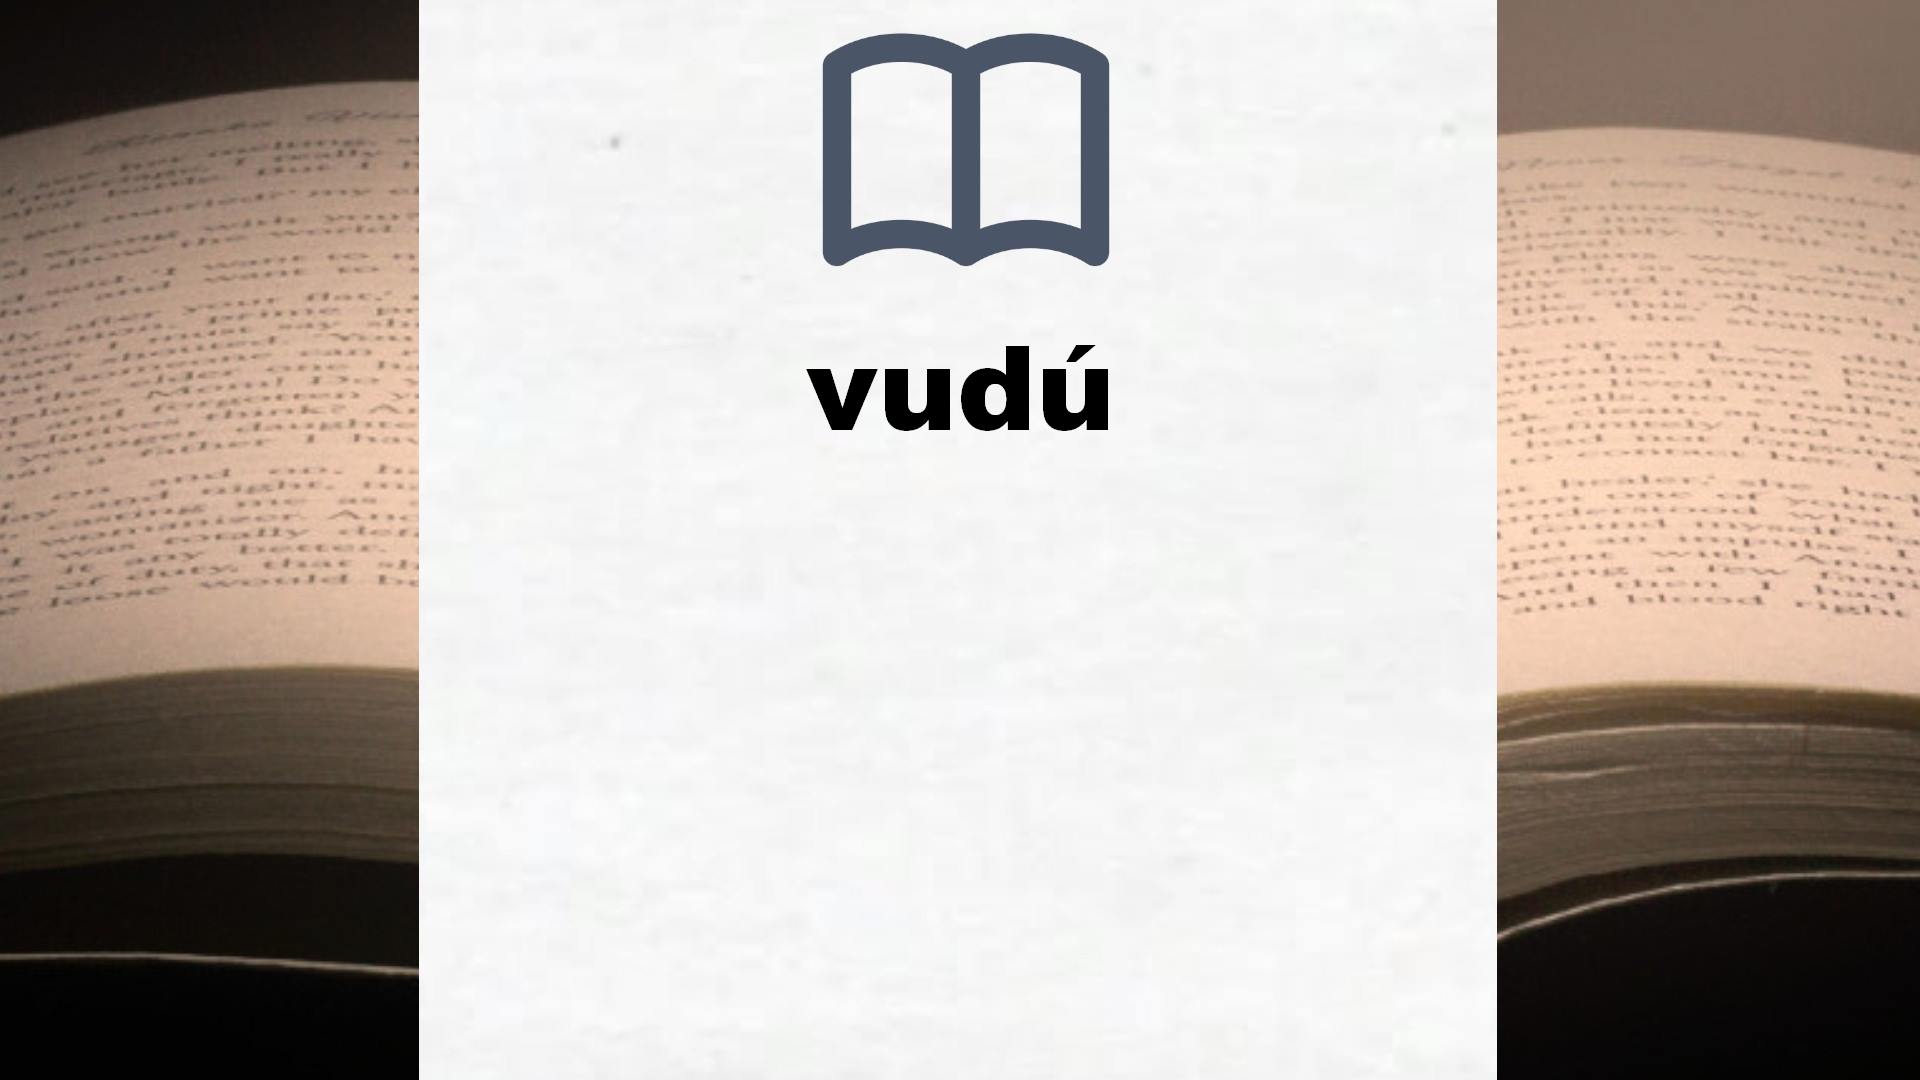 Libros sobre vudú